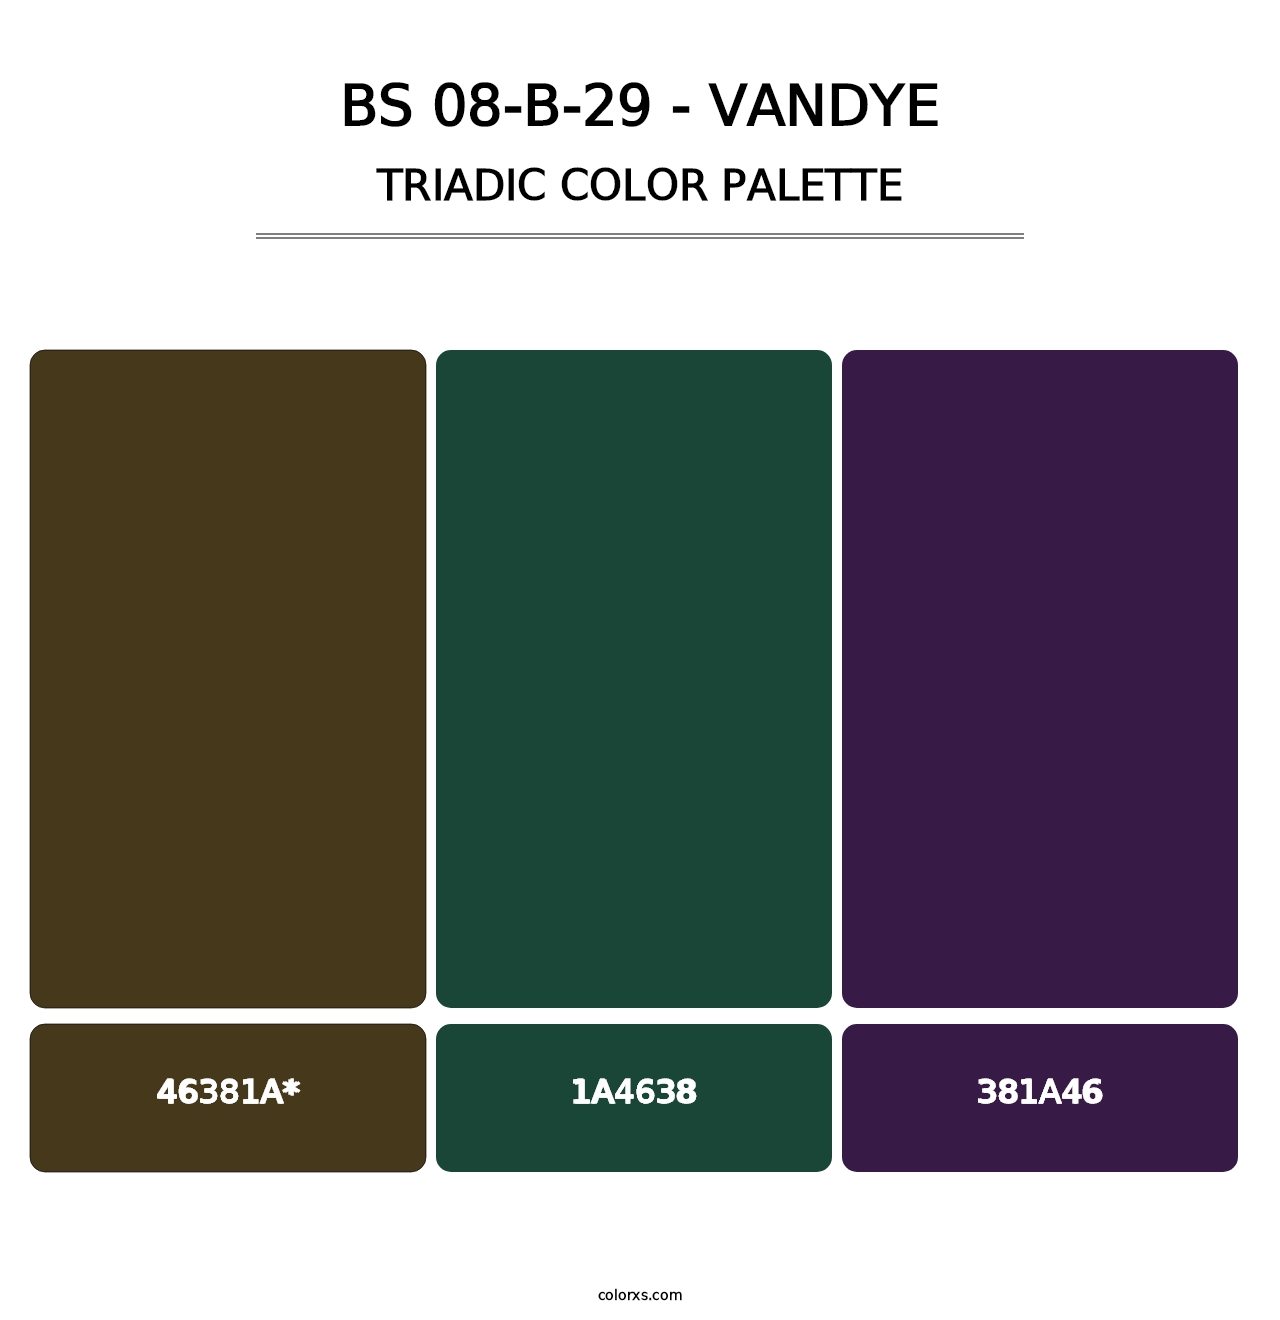 BS 08-B-29 - Vandye - Triadic Color Palette